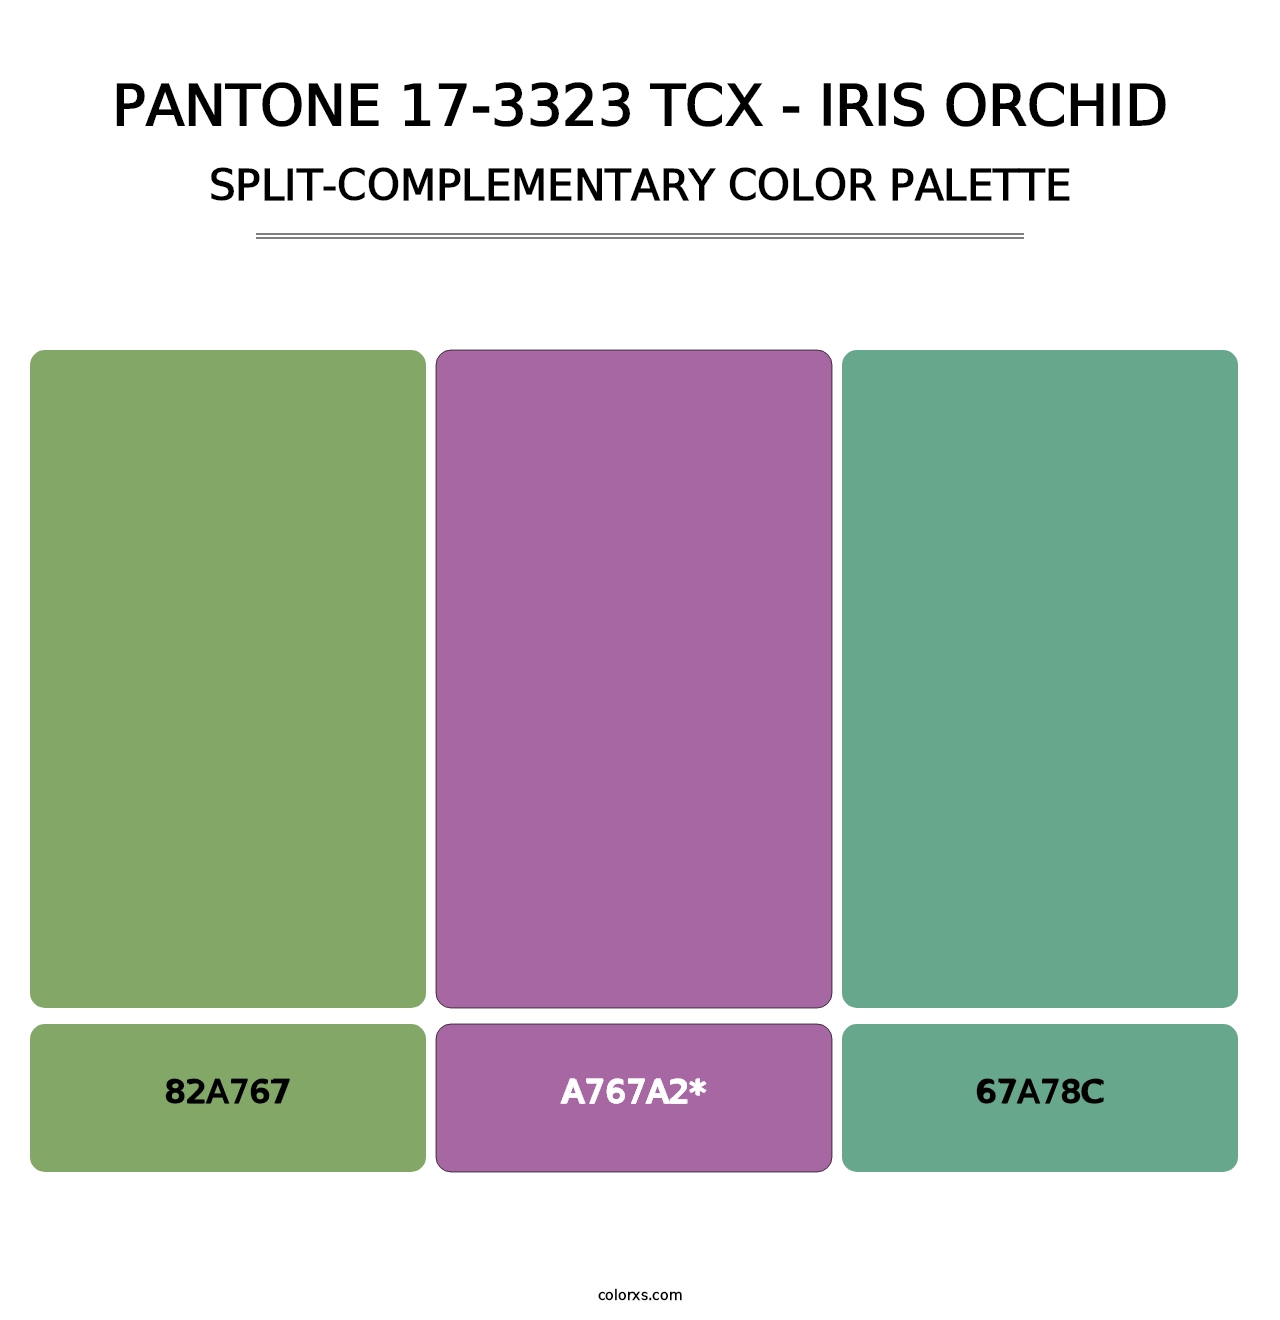 PANTONE 17-3323 TCX - Iris Orchid - Split-Complementary Color Palette